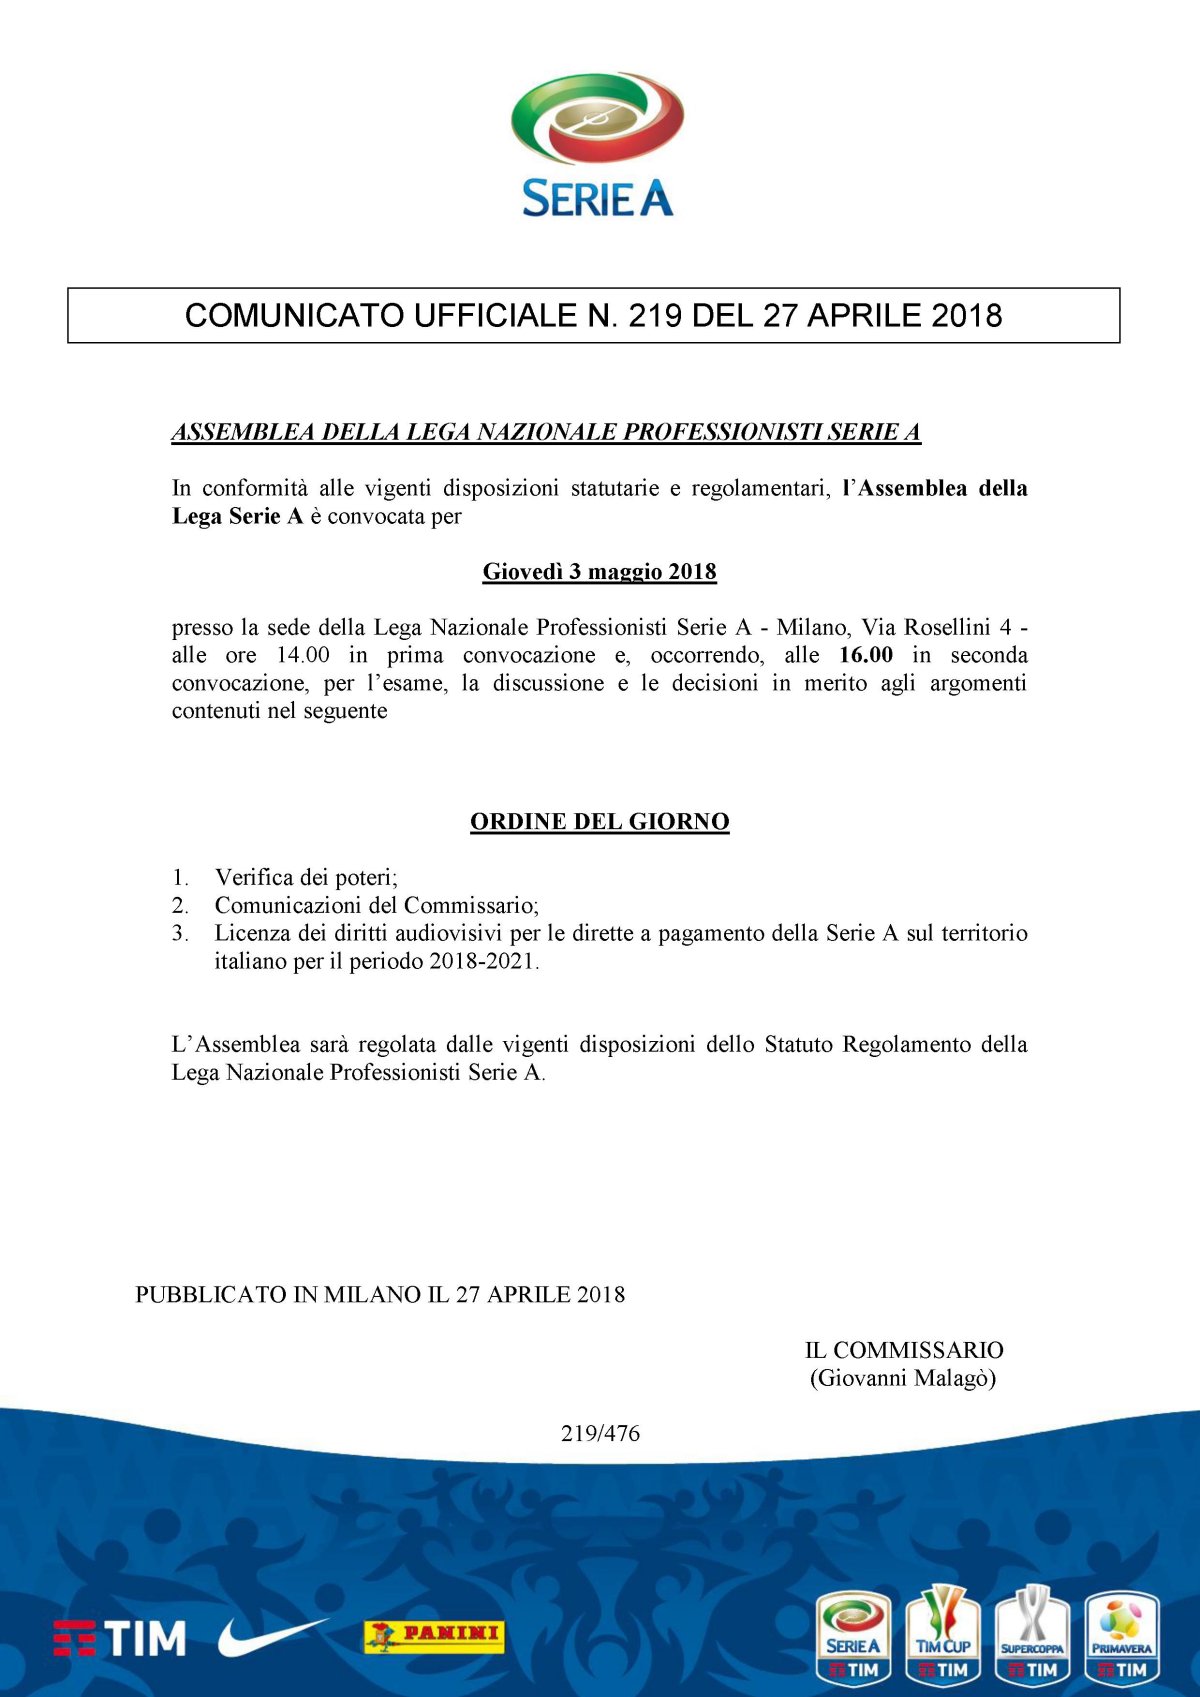 Diritti Tv Serie A 2018 - 2021, Lega Calcio convoca riunione urgente sul caso MediaPro